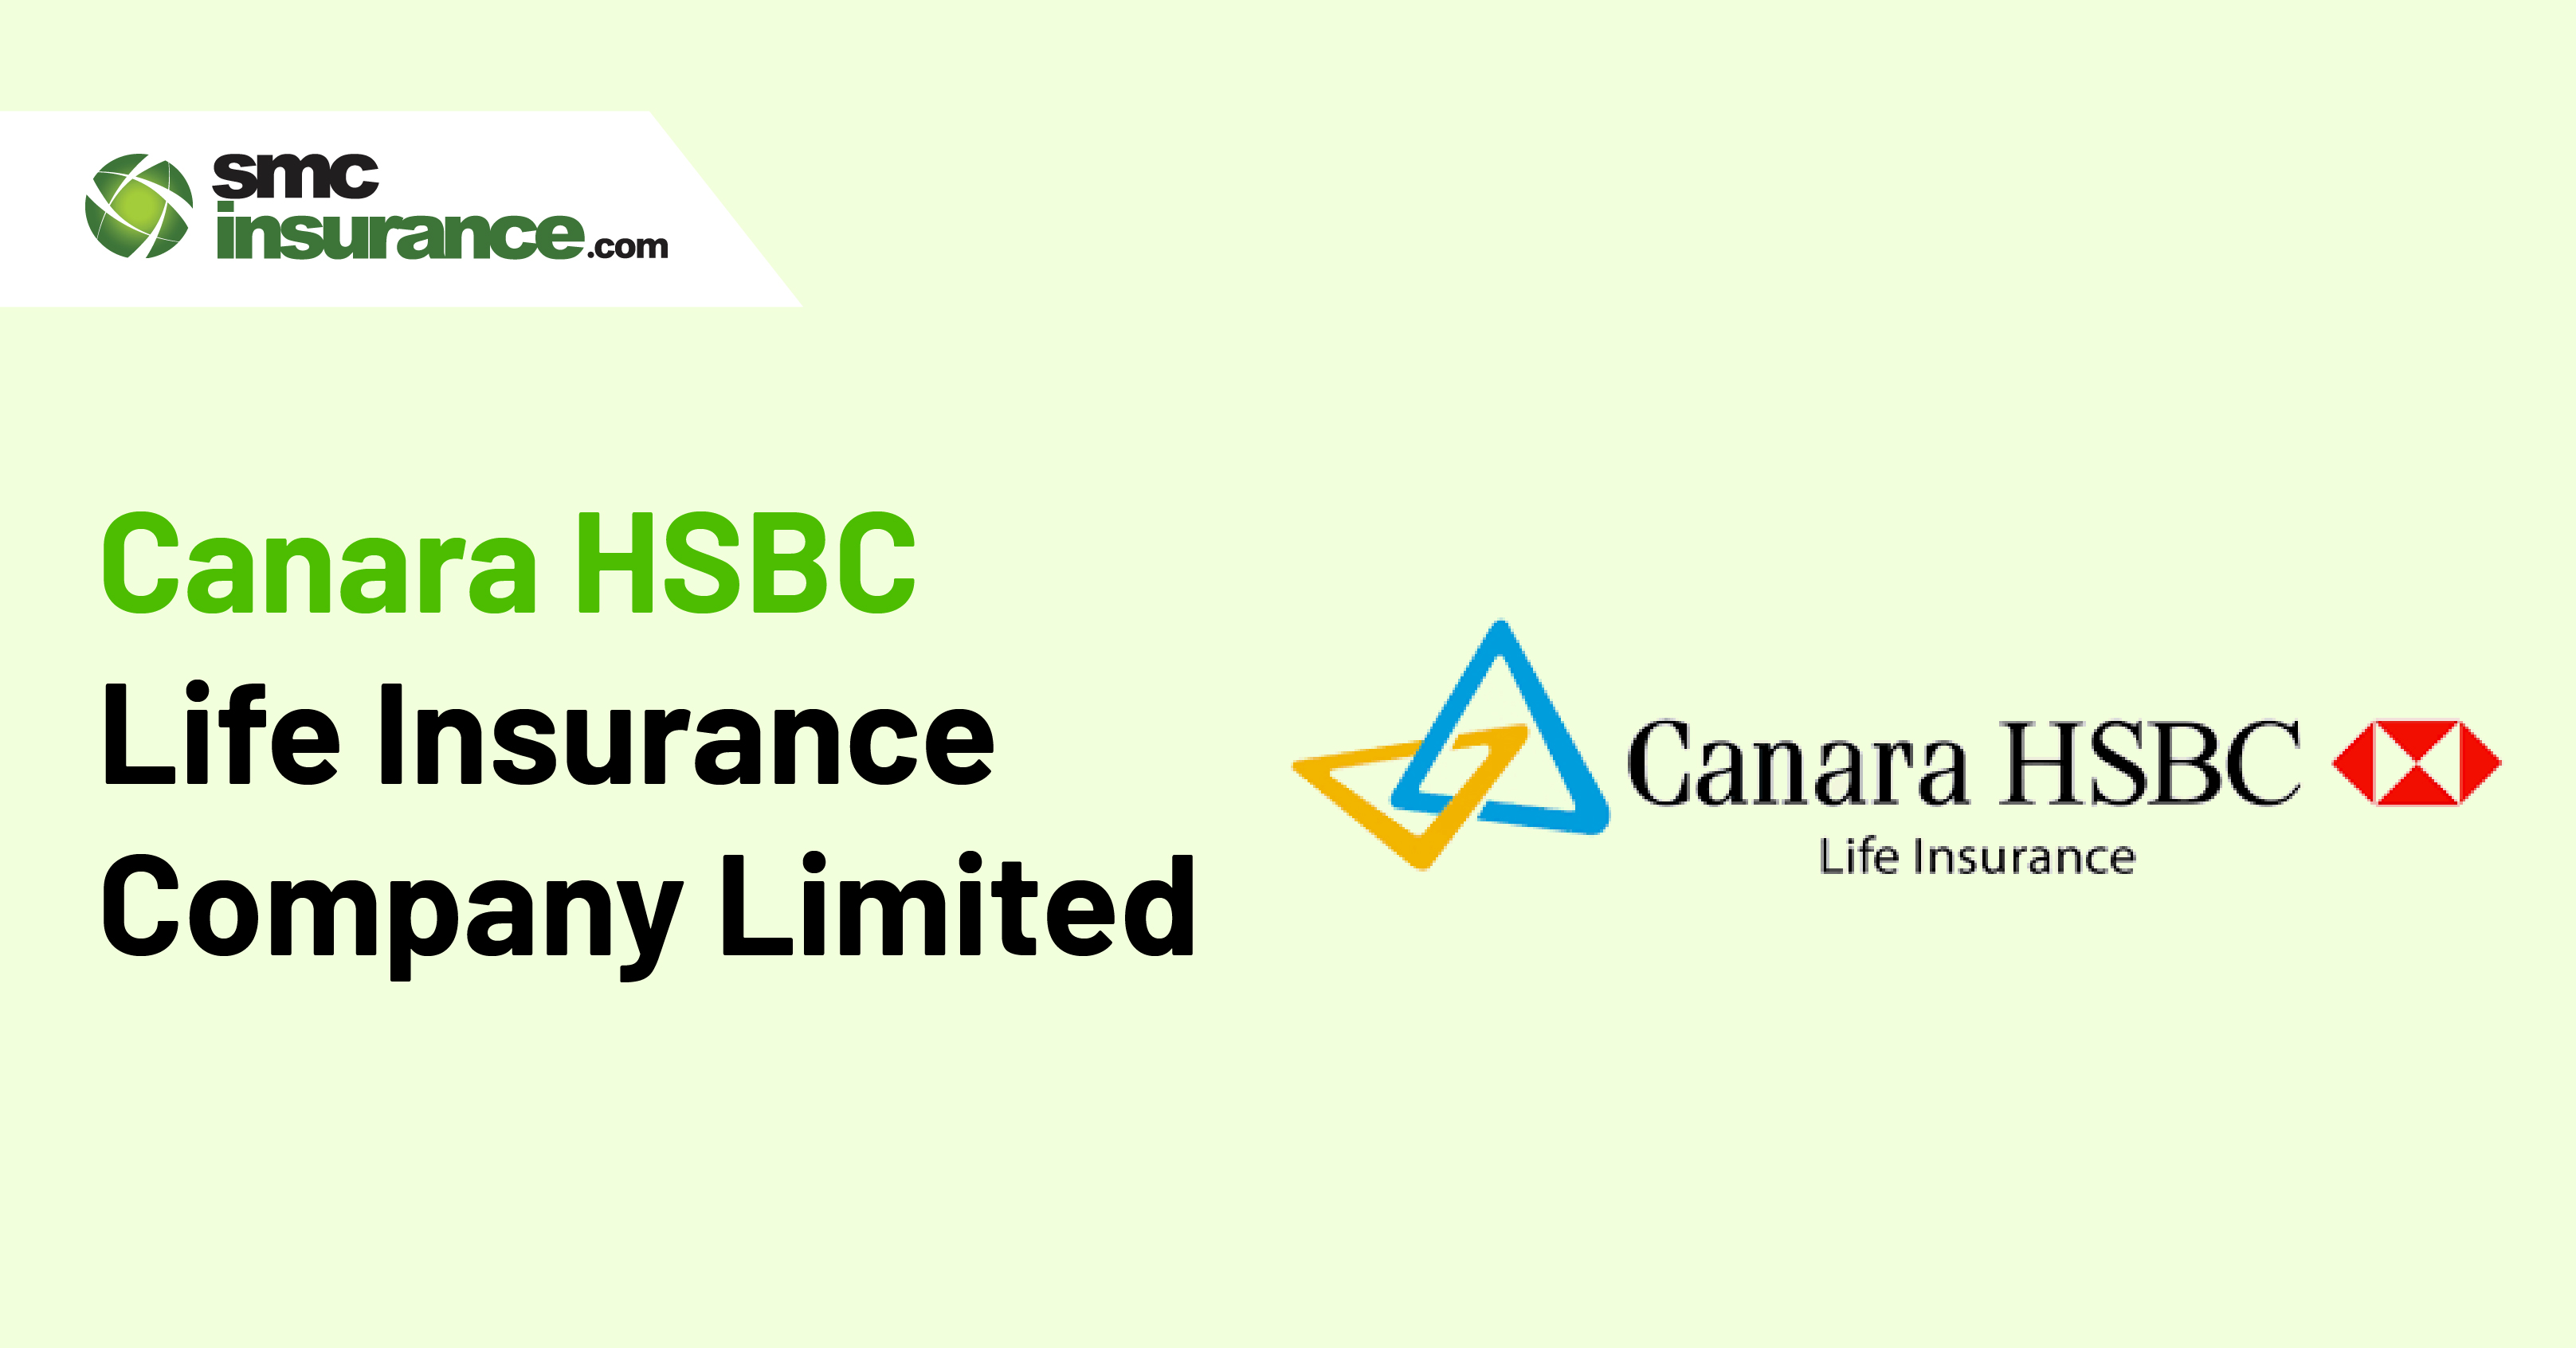 Canara HSBC Life Insurance Company Limited